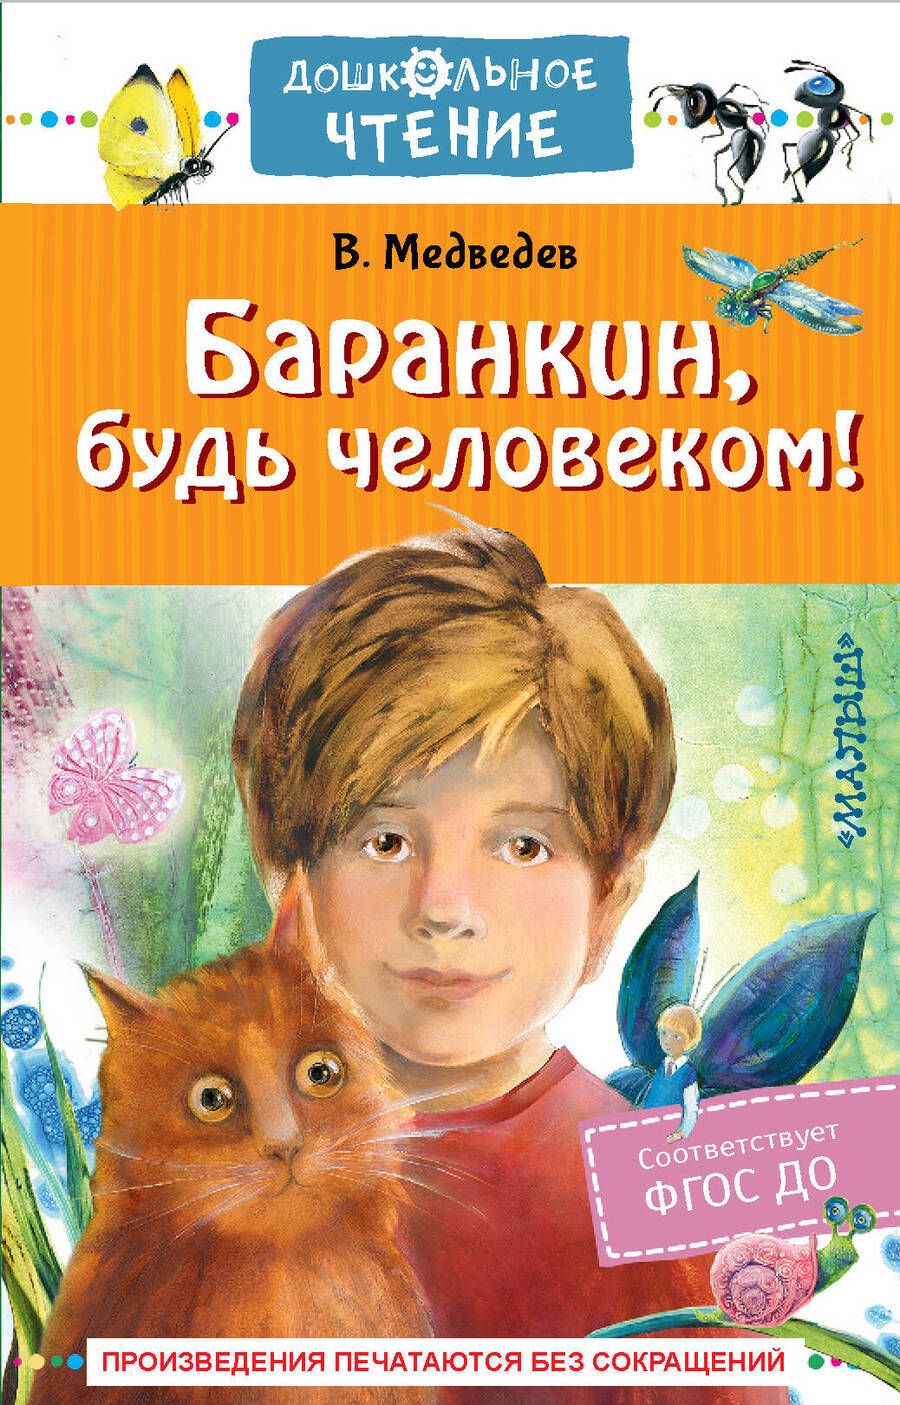 Обложка книги "Медведев: Баранкин, будь человеком!"